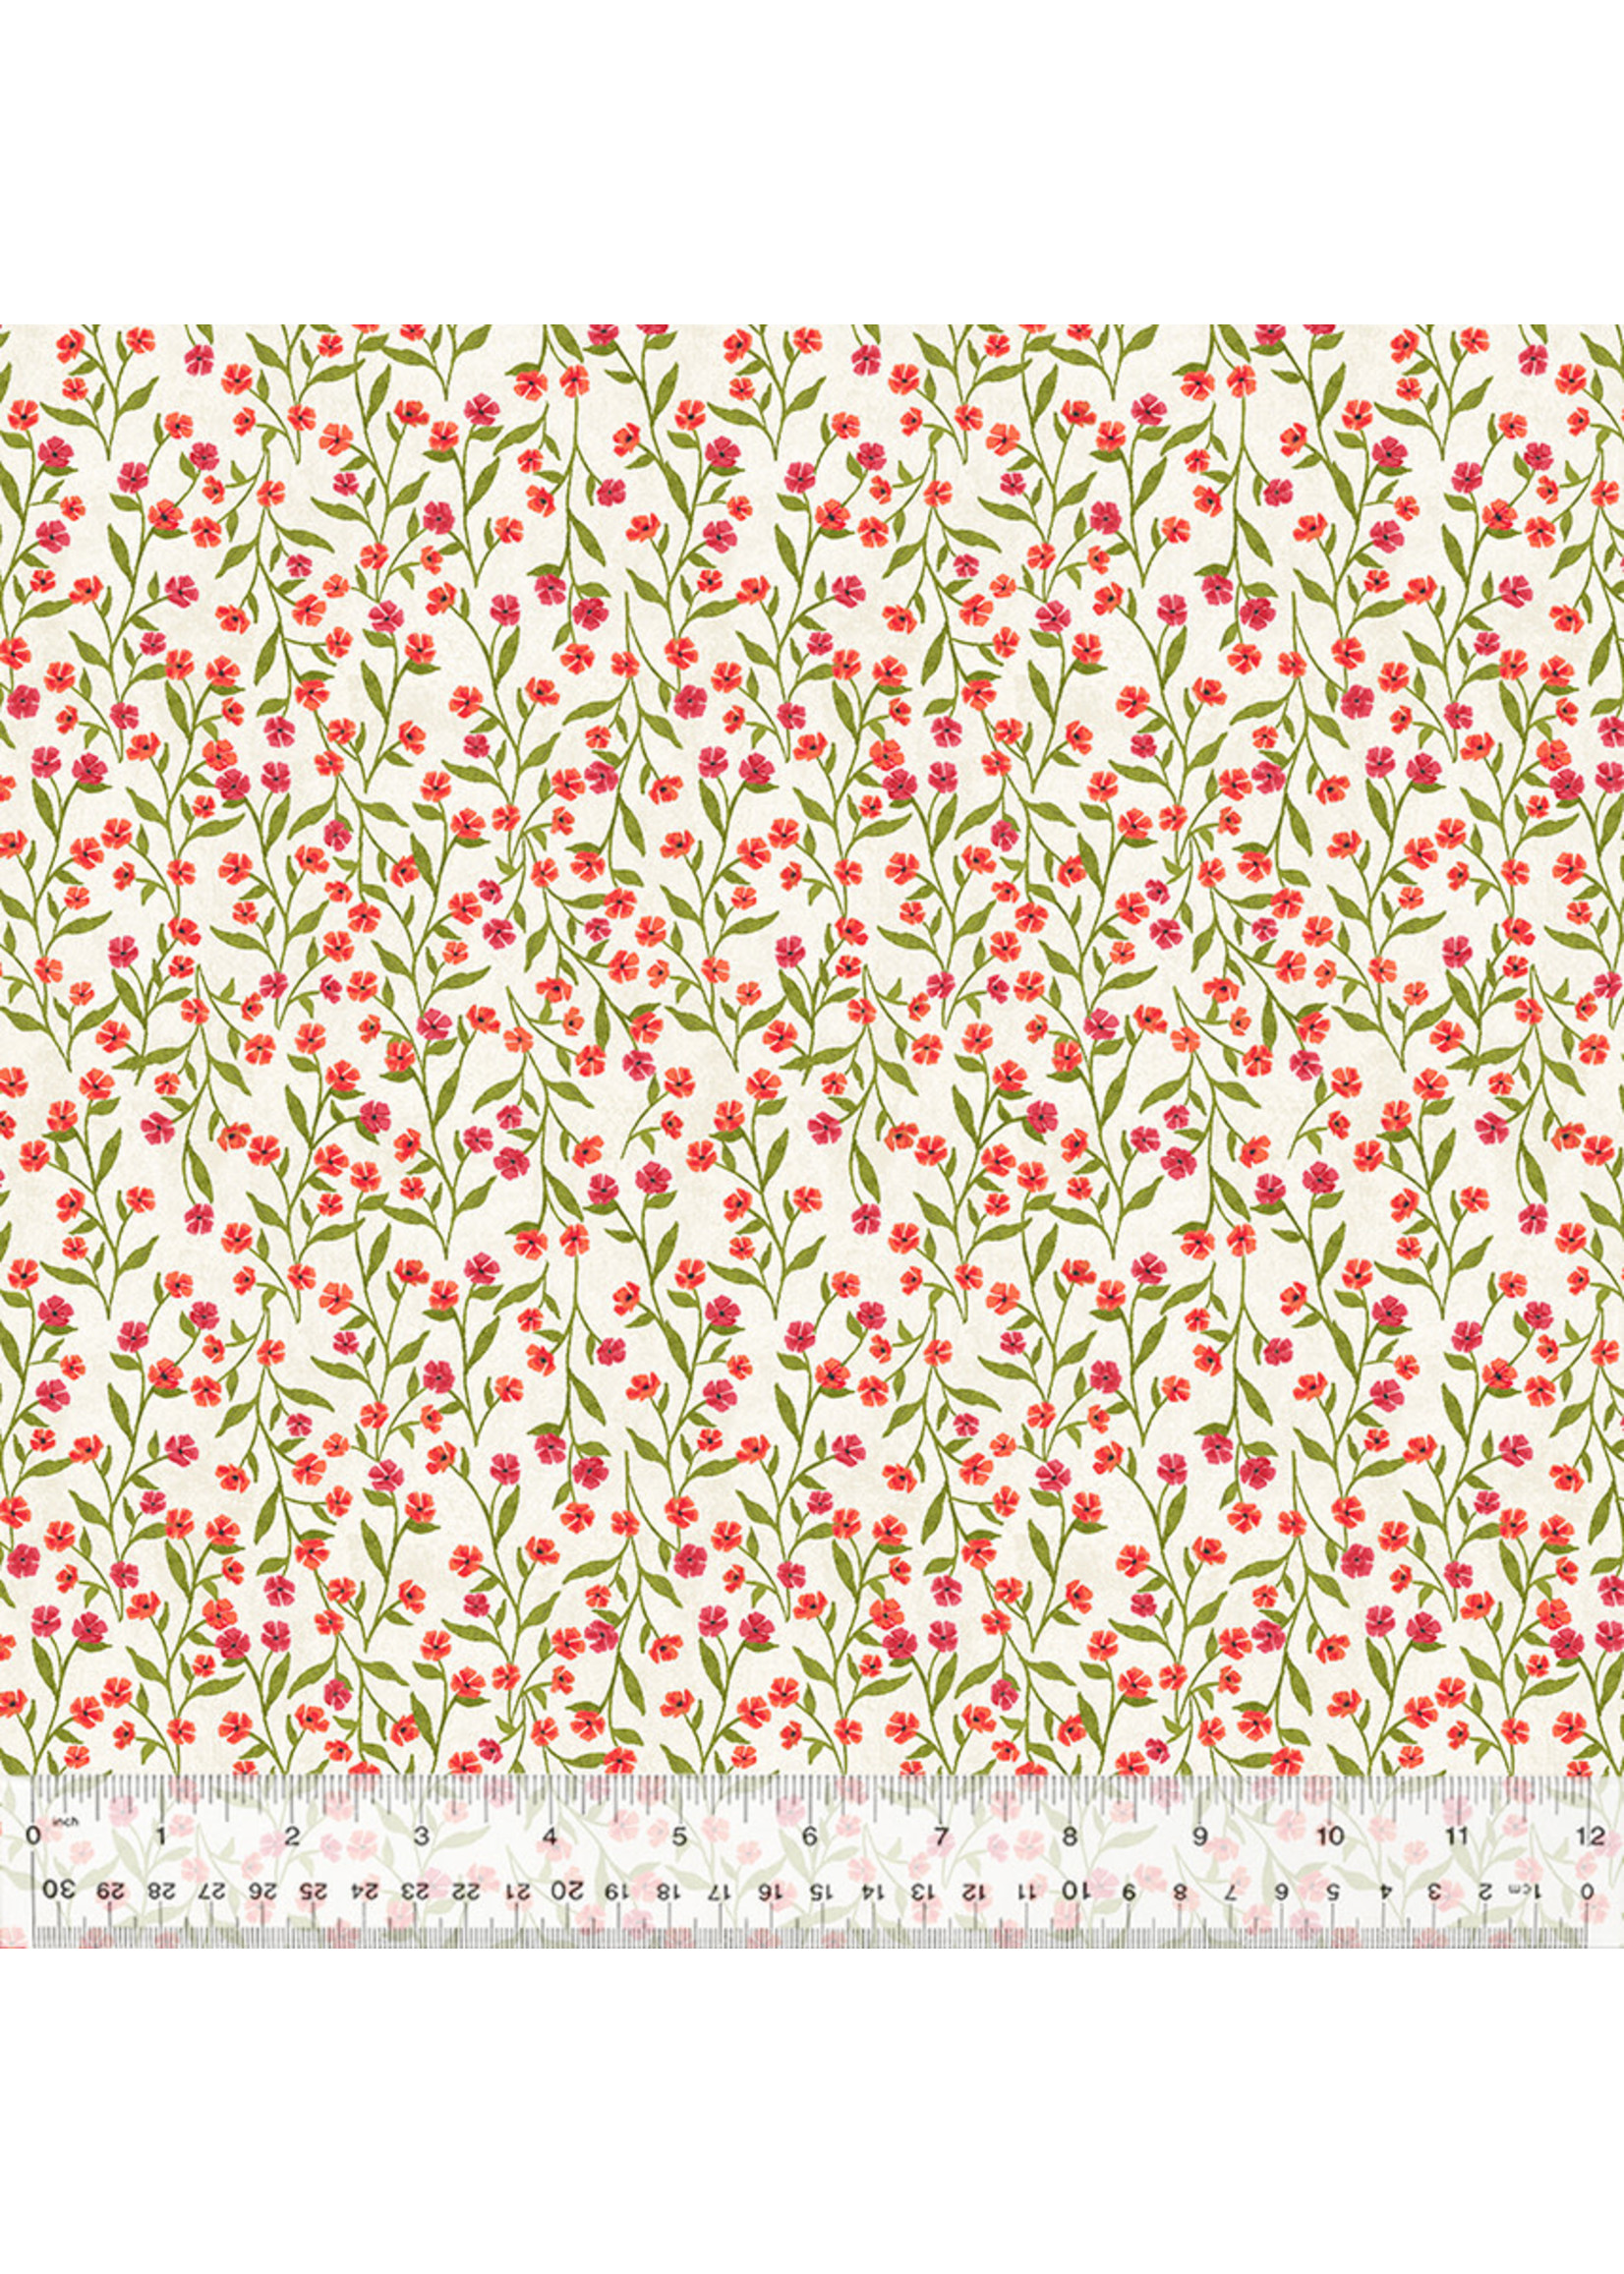 Windham Fabrics Poppy - Ditsy Vine - Ivory - 2508-817